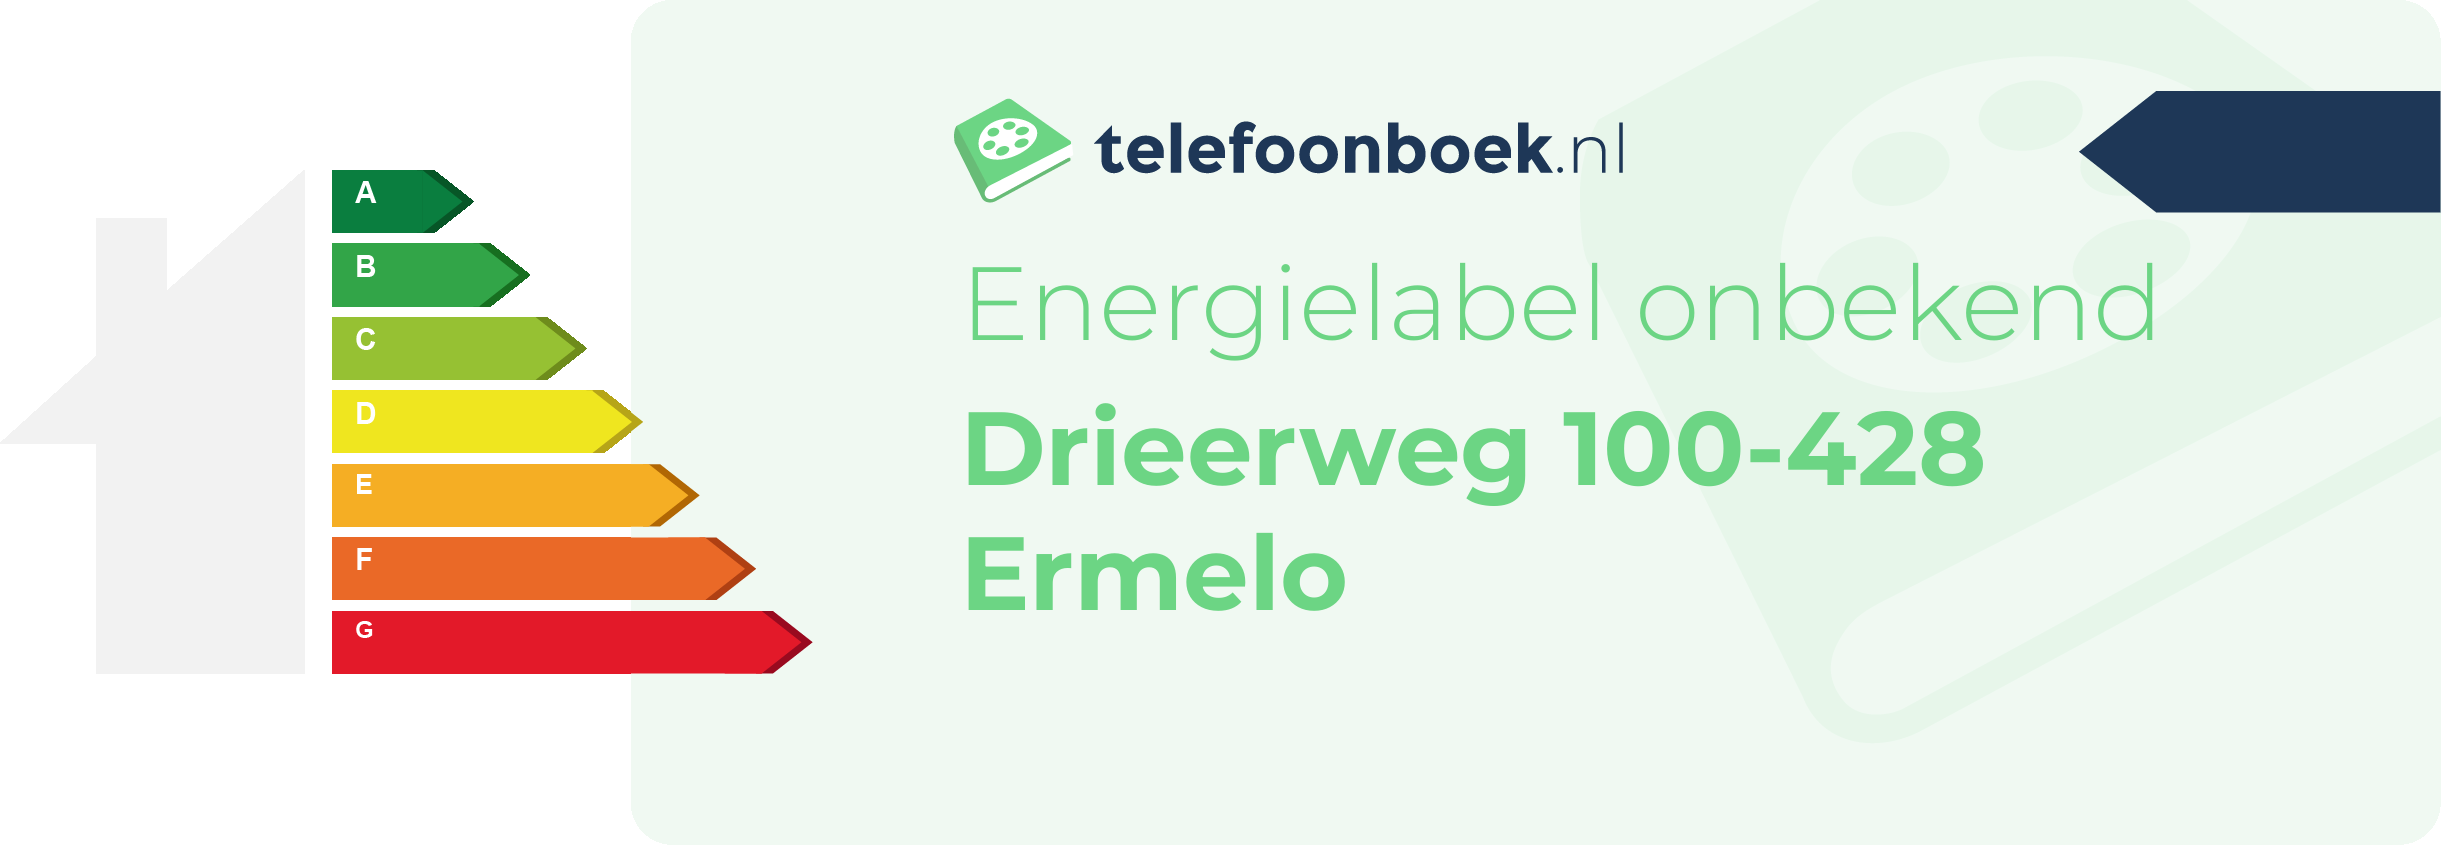 Energielabel Drieerweg 100-428 Ermelo